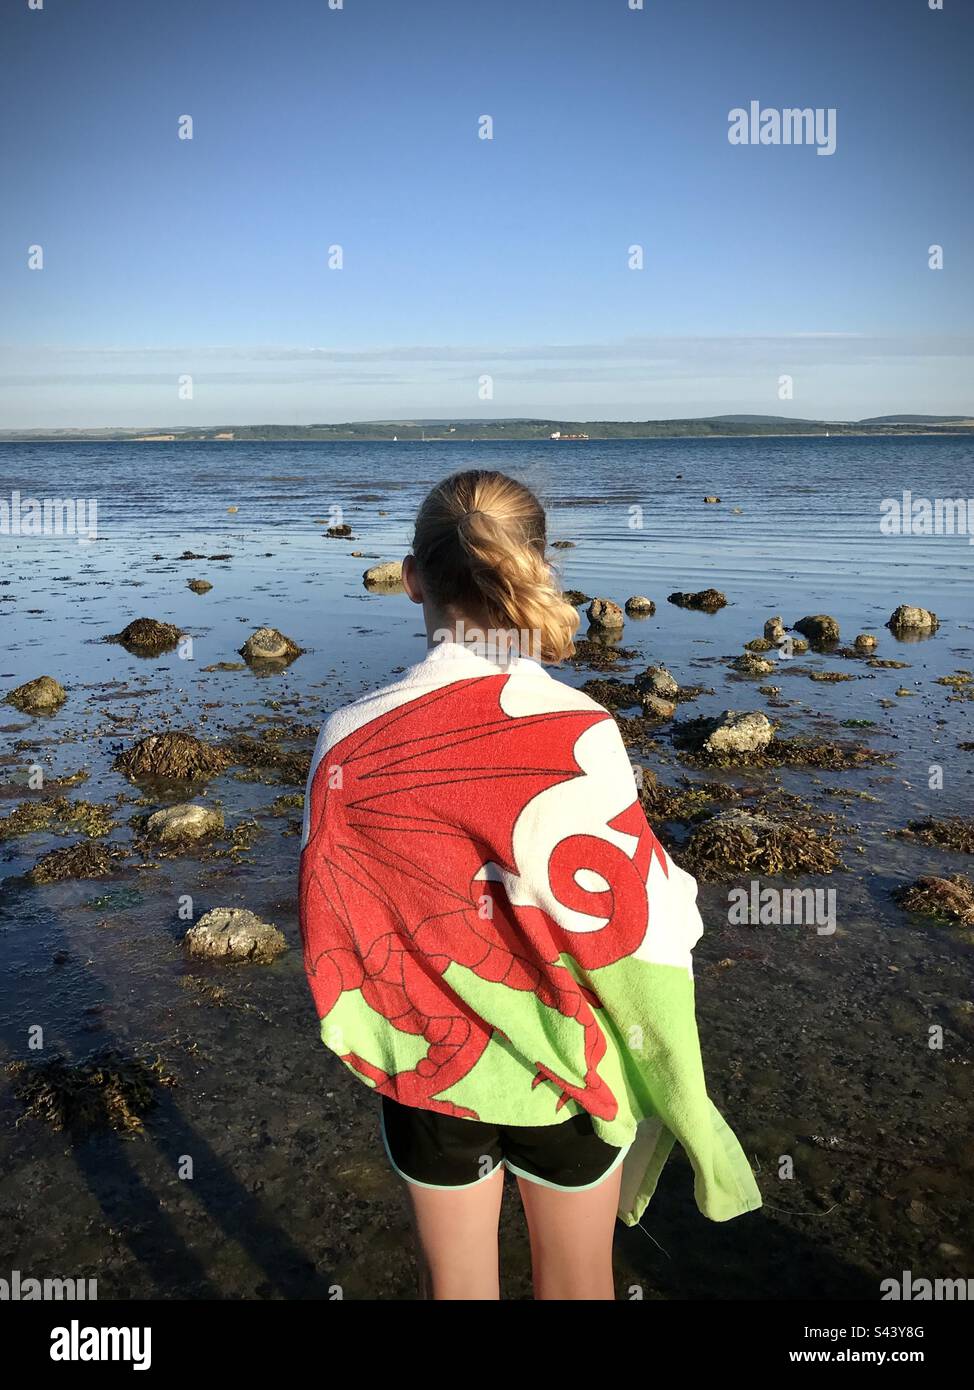 Una ragazza di 10 anni con ritorno alla macchina fotografica avvolta in un asciugamano Wales Flag che si affaccia sul mare all'Isola di Wight da una spiaggia sulla costa meridionale dell'Inghilterra Foto Stock